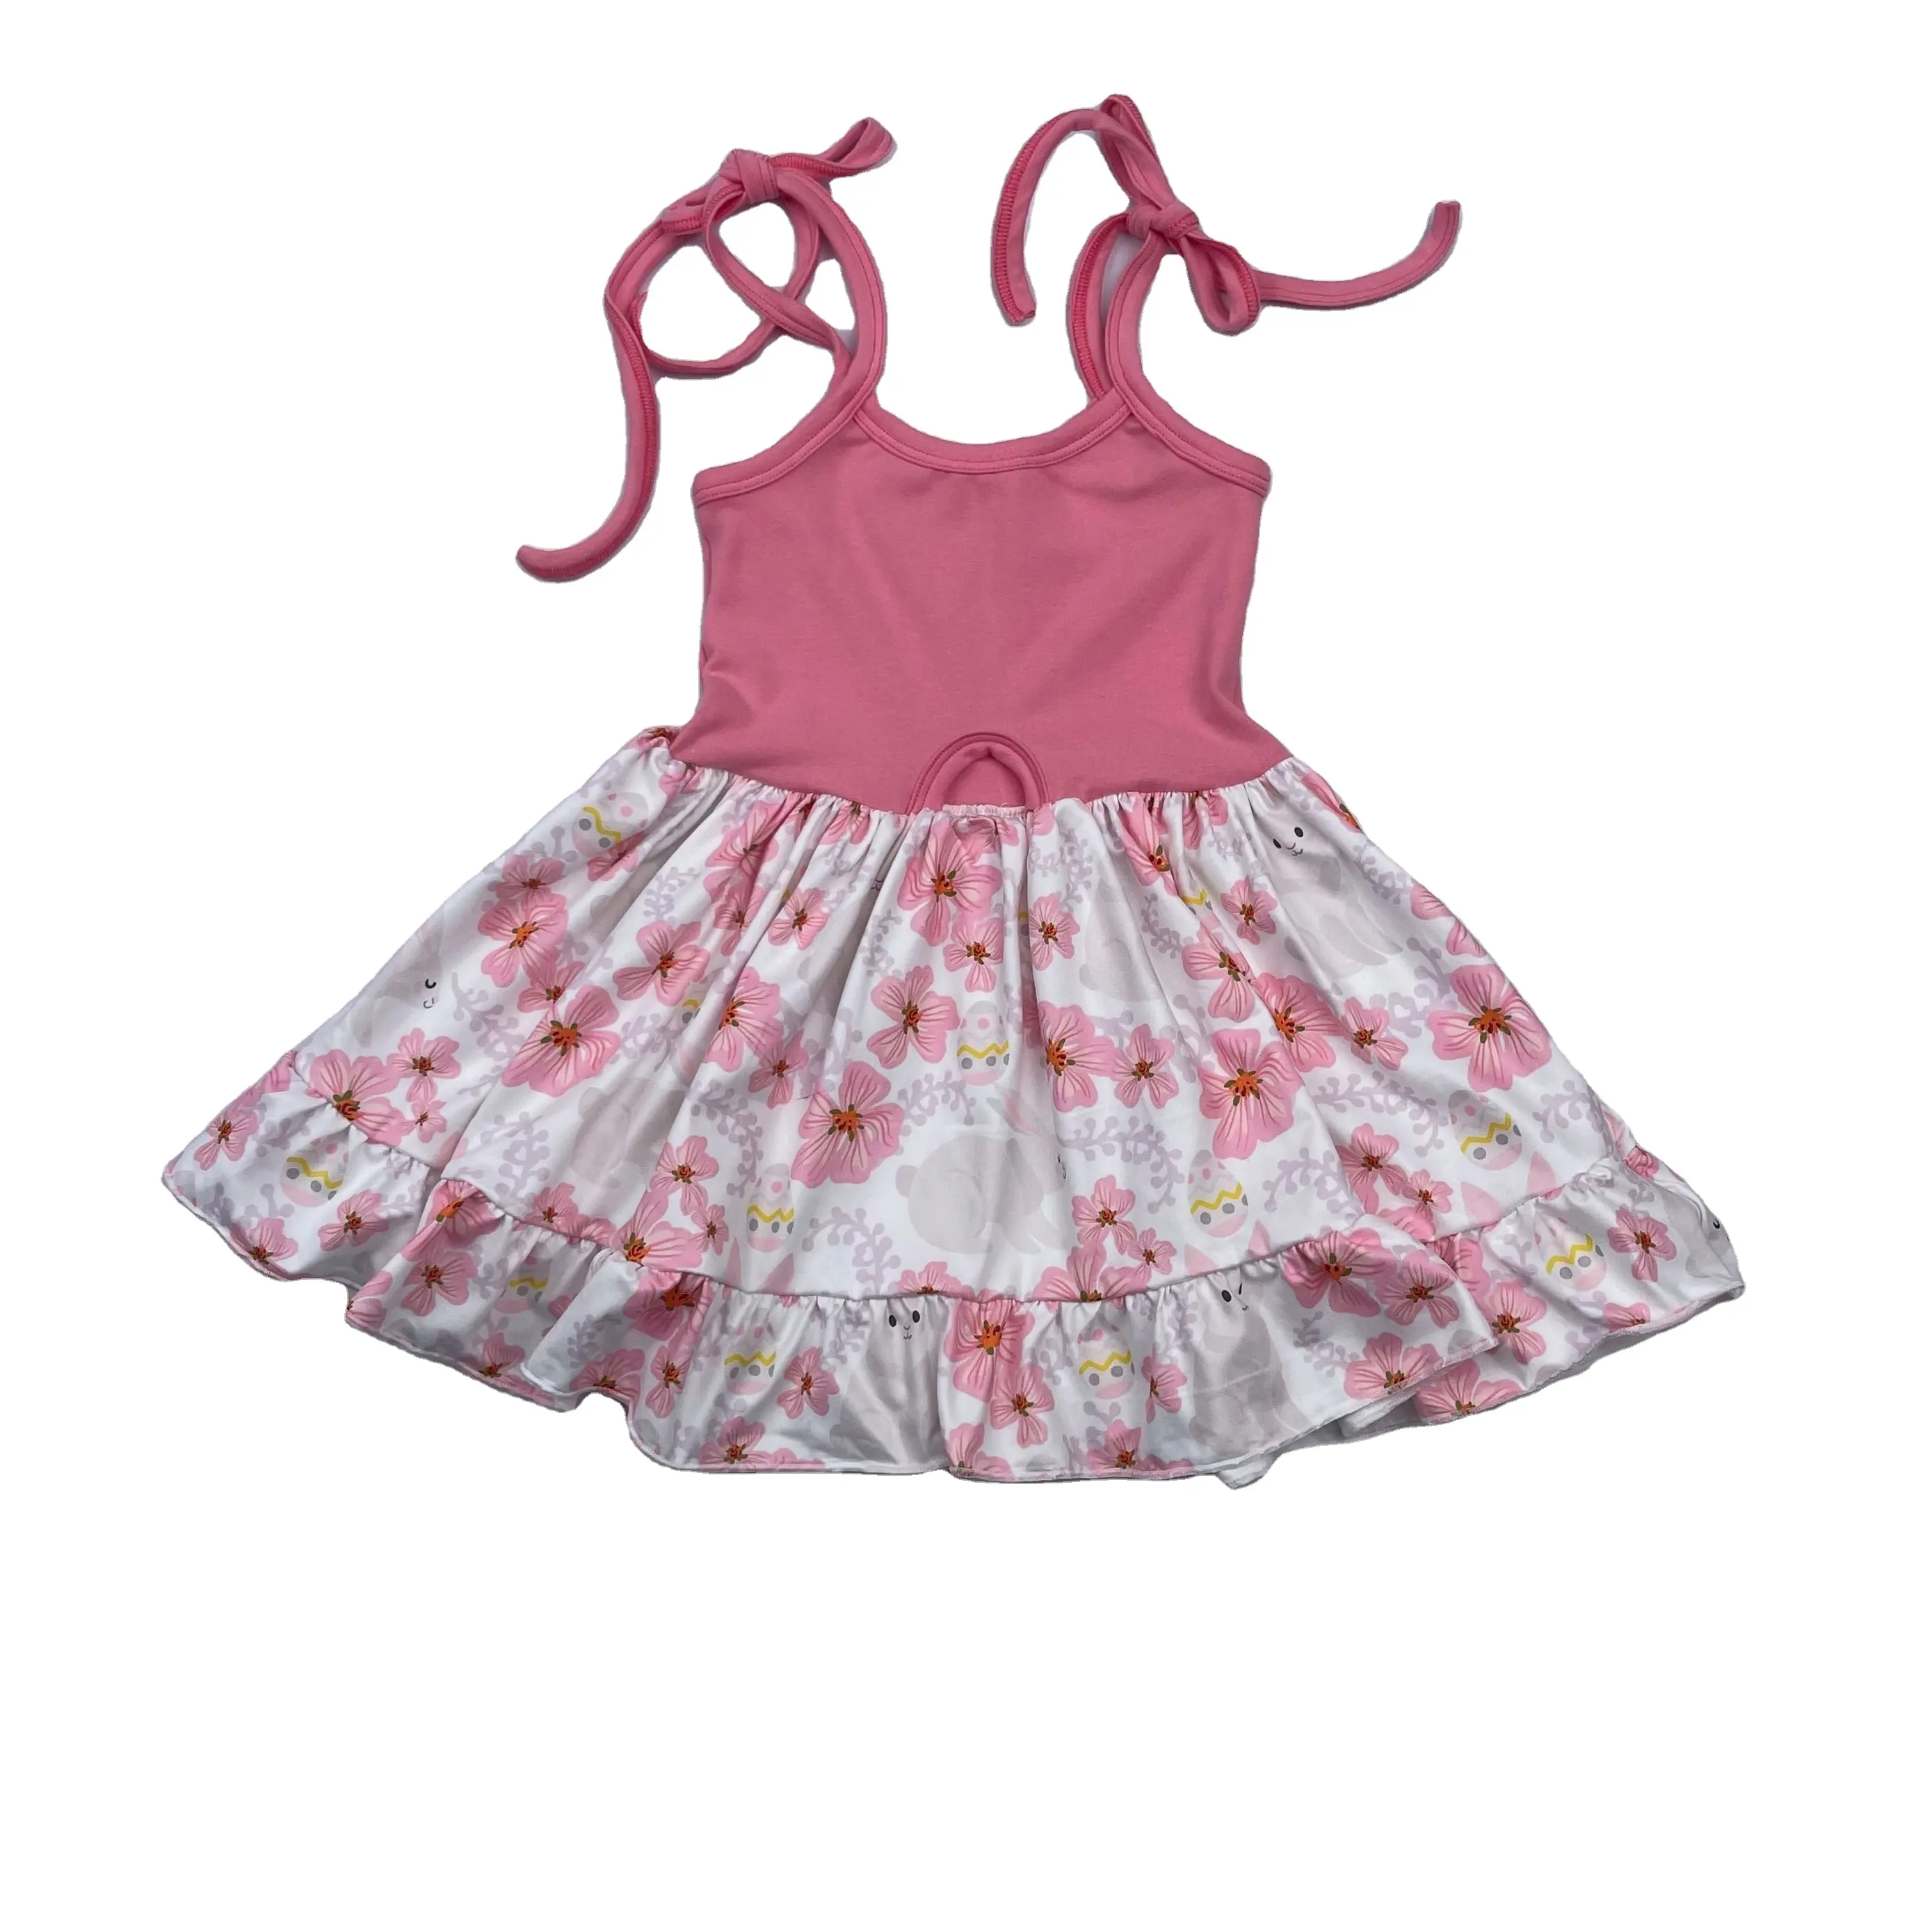 Liangzhe OEM אפרסק פרחוני באני דפוס beby ילדה שמלת תינוקת קיץ שמלה לילדים